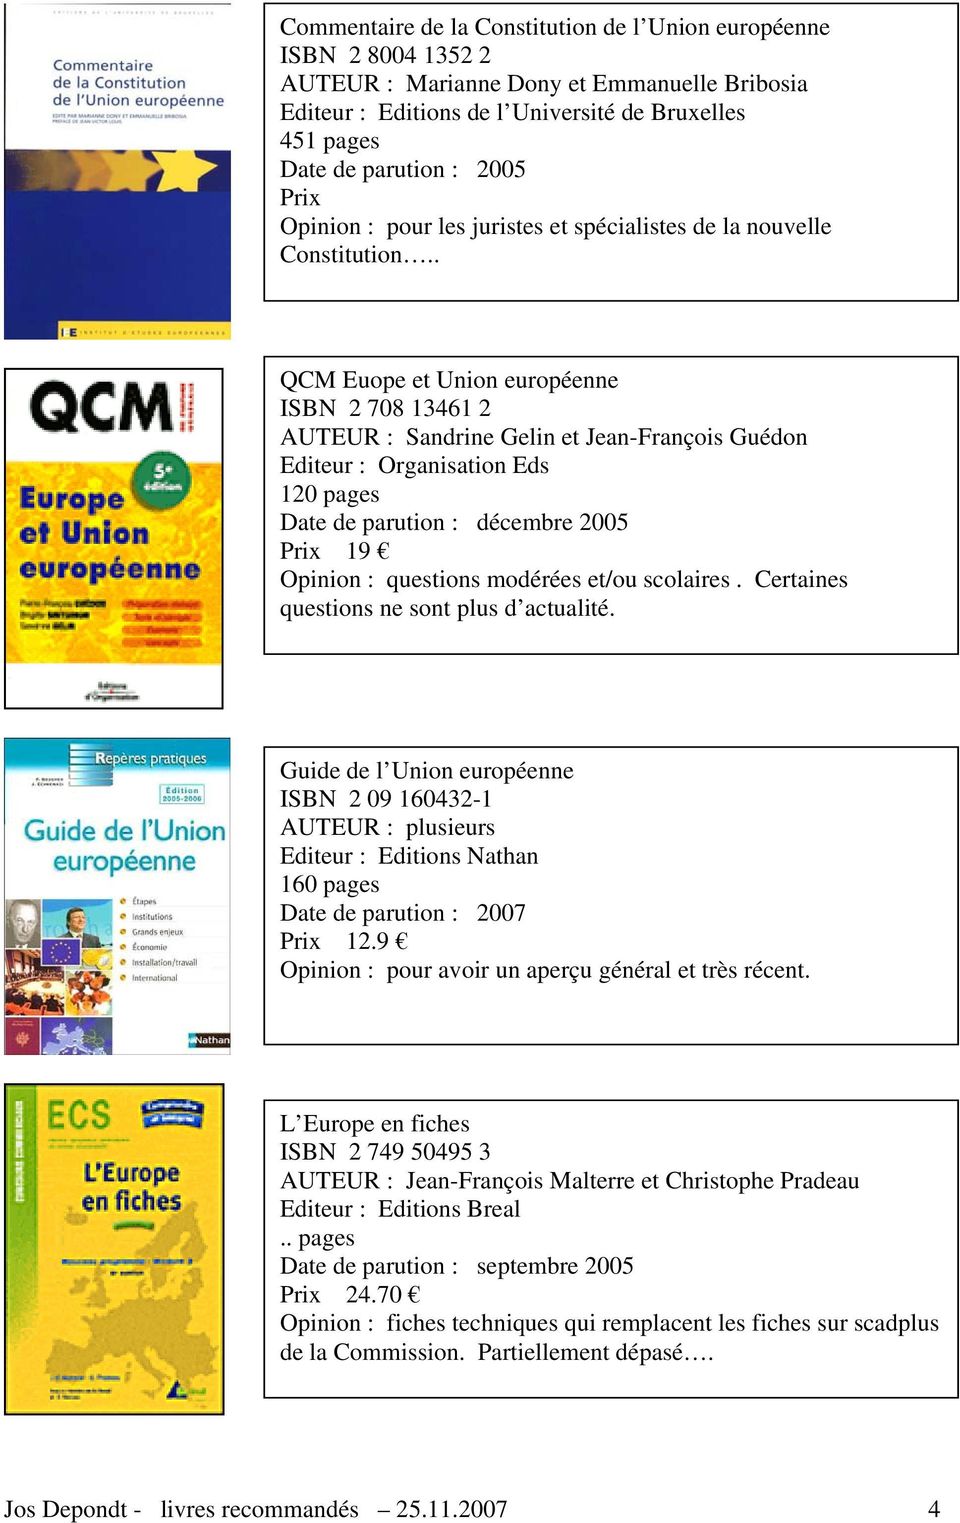 . QCM Euope et Union européenne ISBN 2 708 13461 2 AUTEUR : Sandrine Gelin et Jean-François Guédon Editeur : Organisation Eds 120 pages Date de parution : décembre 2005 Prix 19 Opinion : questions